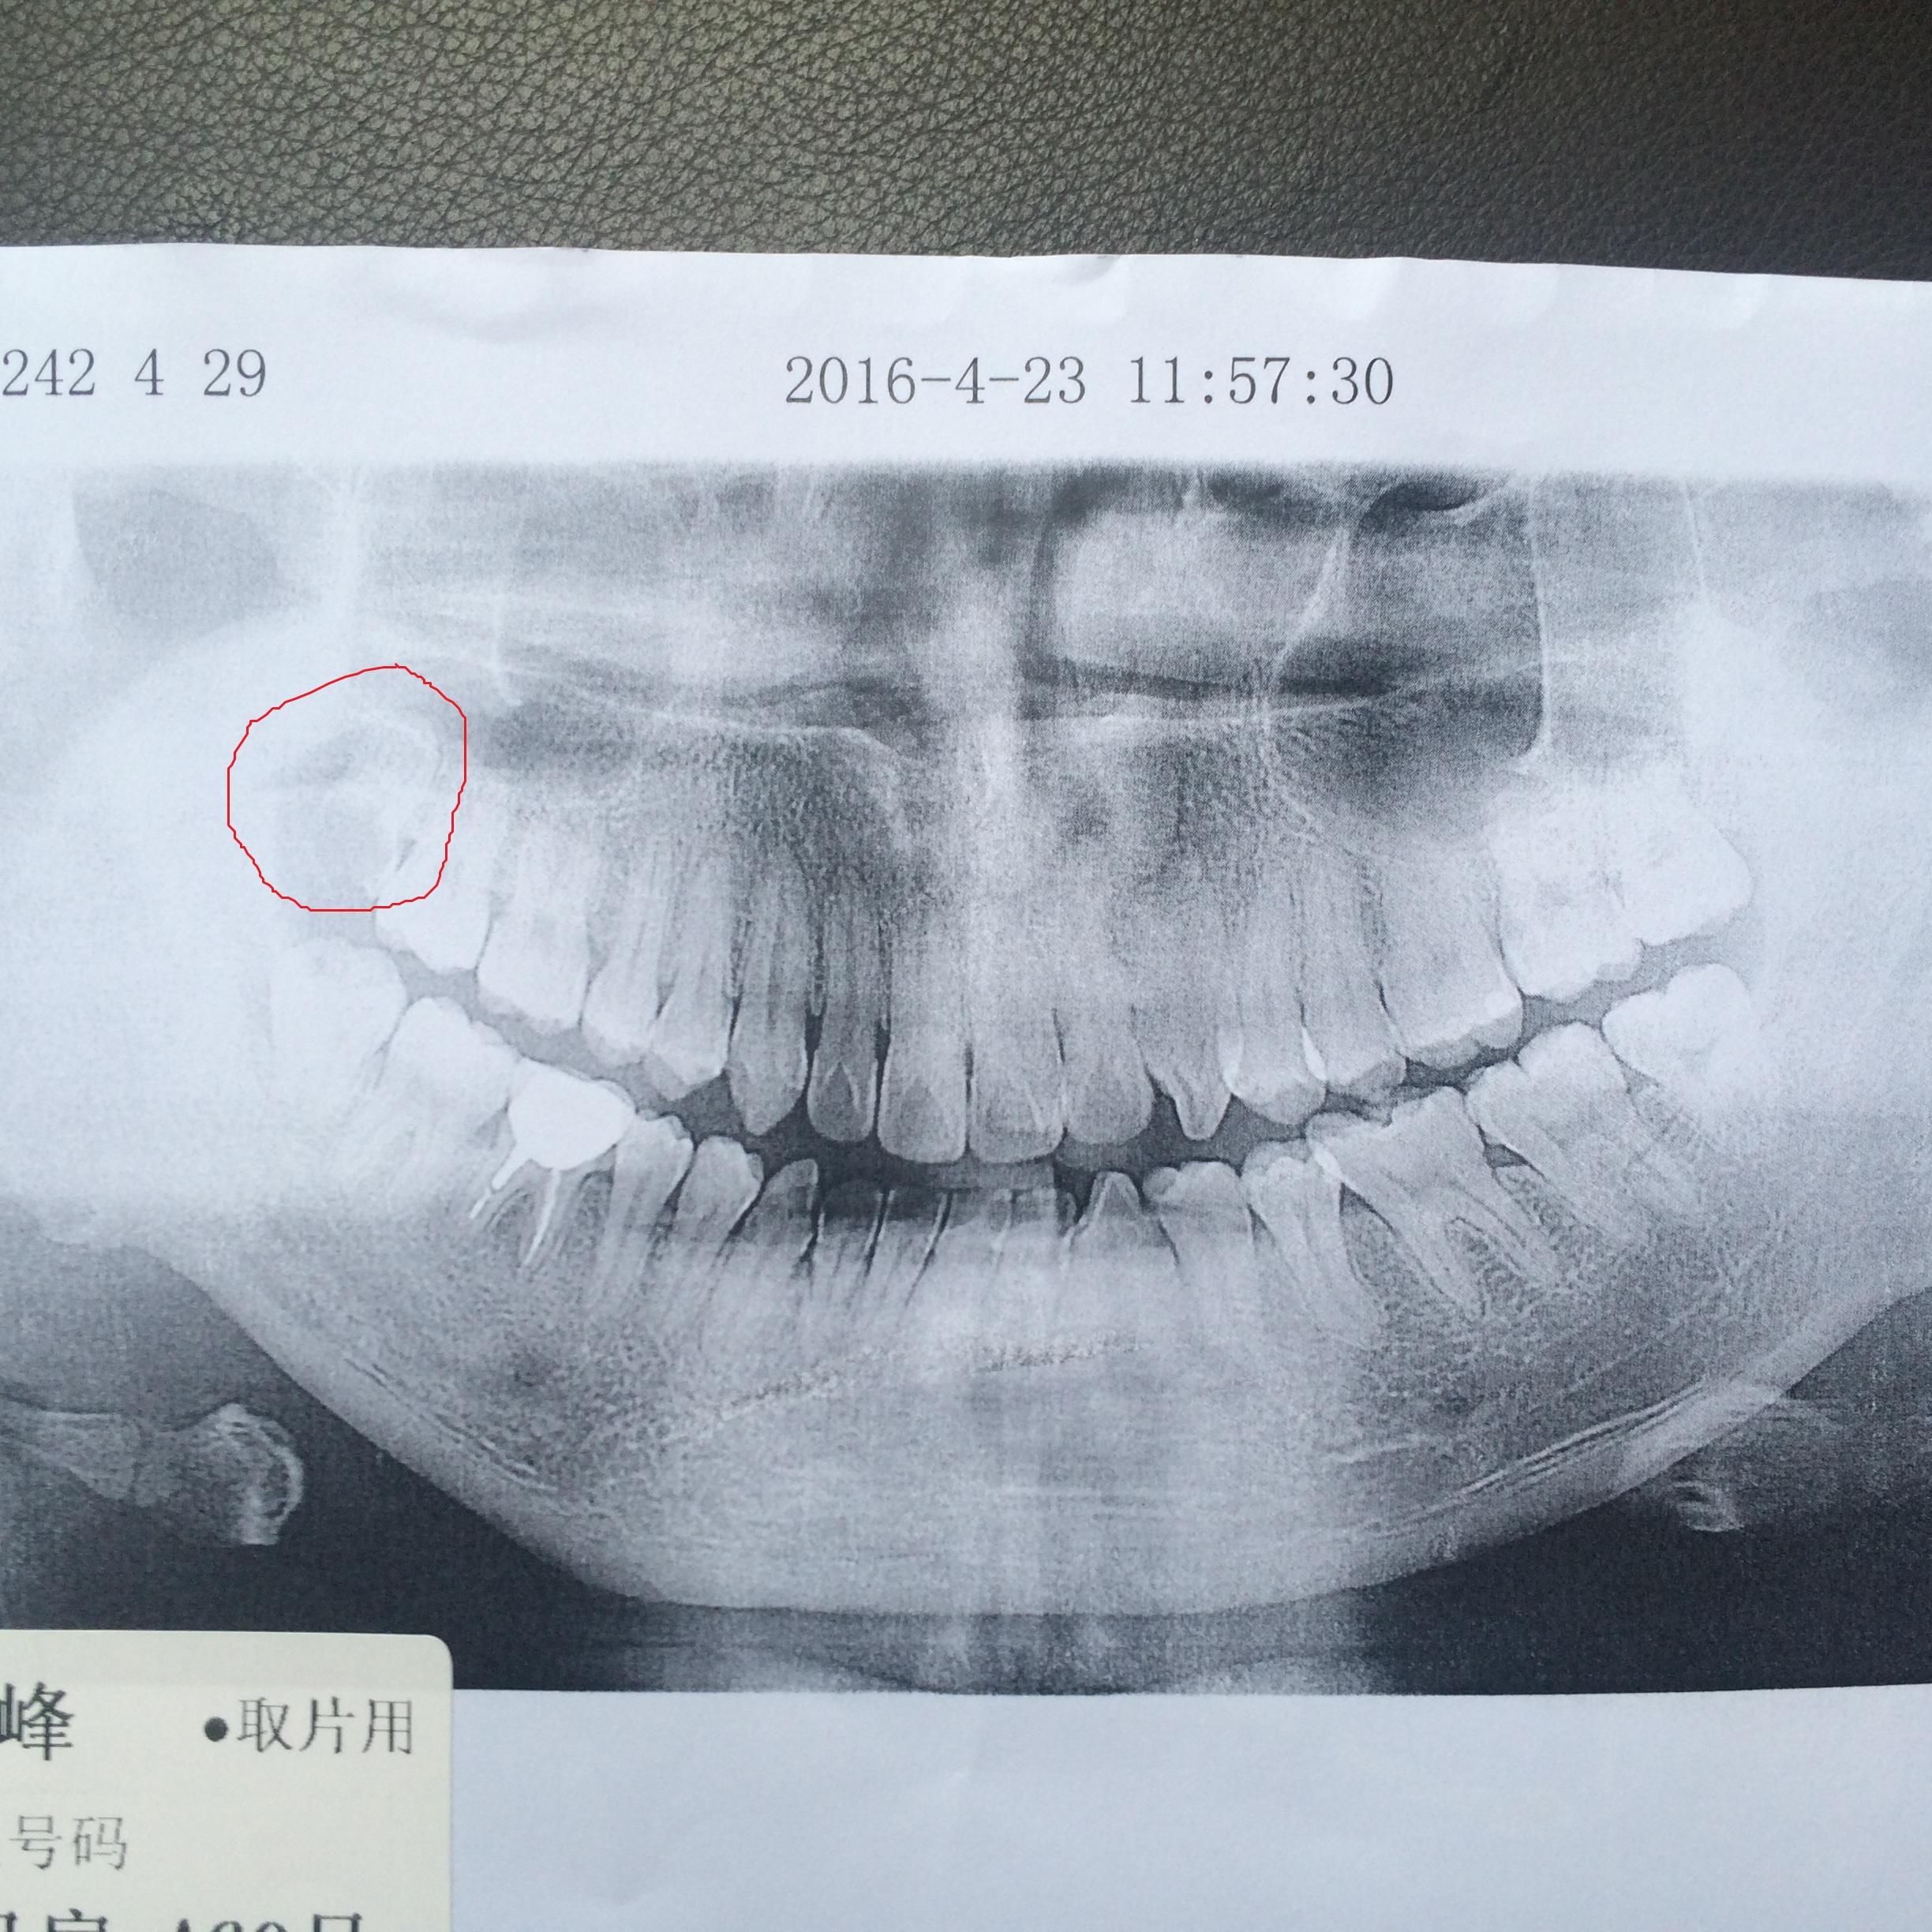 【附图】右上智齿蛀牙了,想拔掉,牙根貌似接近上颌窦,难度如何?